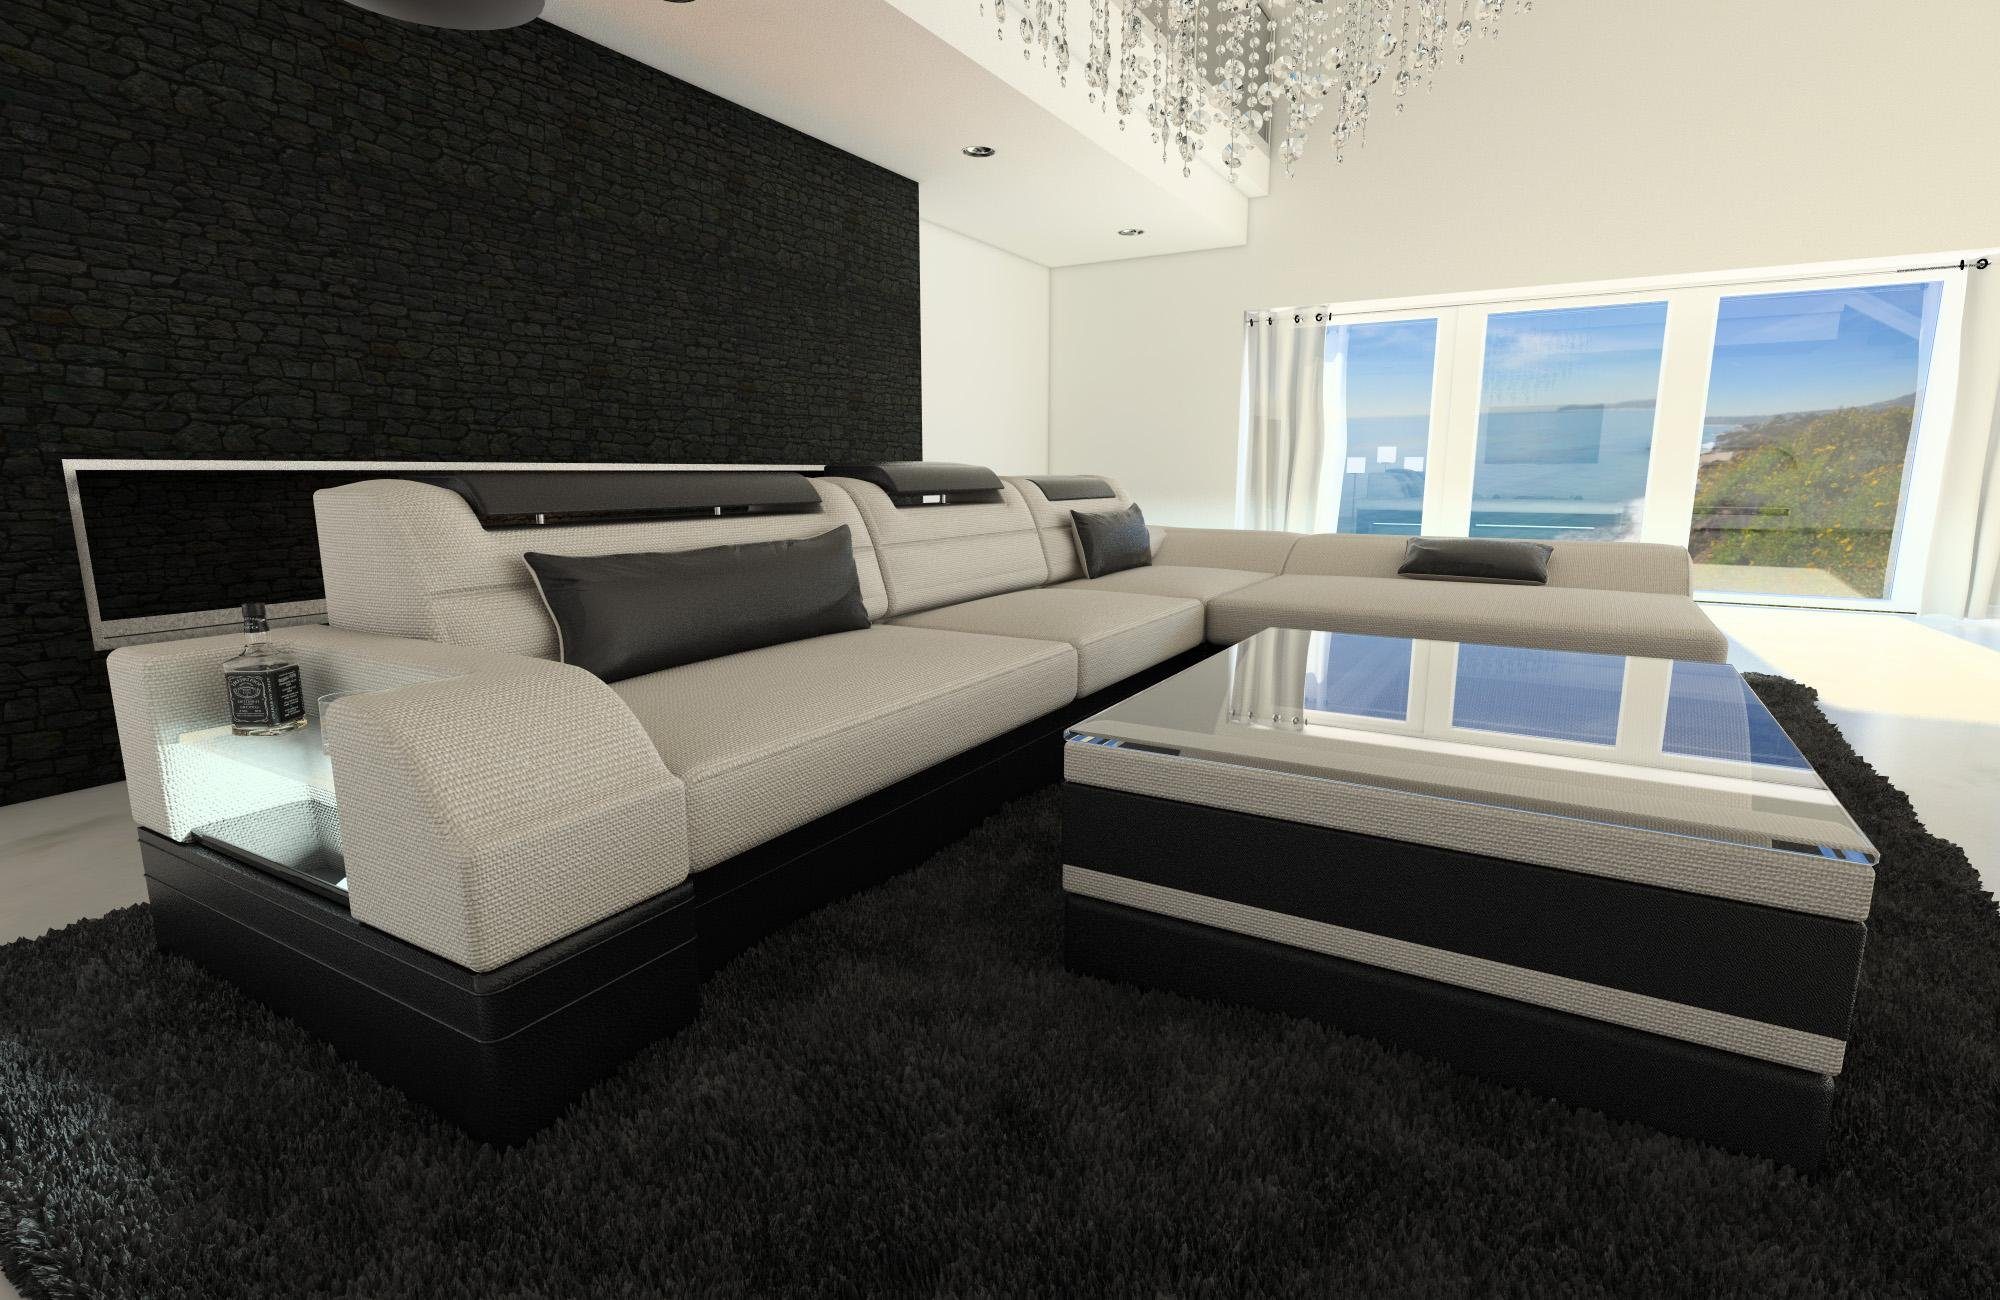 Sofa Dreams Ecksofa Stoffsofa H1 Bettfunktion, Couch LED, L ausziehbare Elfenbein-Schwarz mit Form, Polstersofa Designersofa Monza Stoff